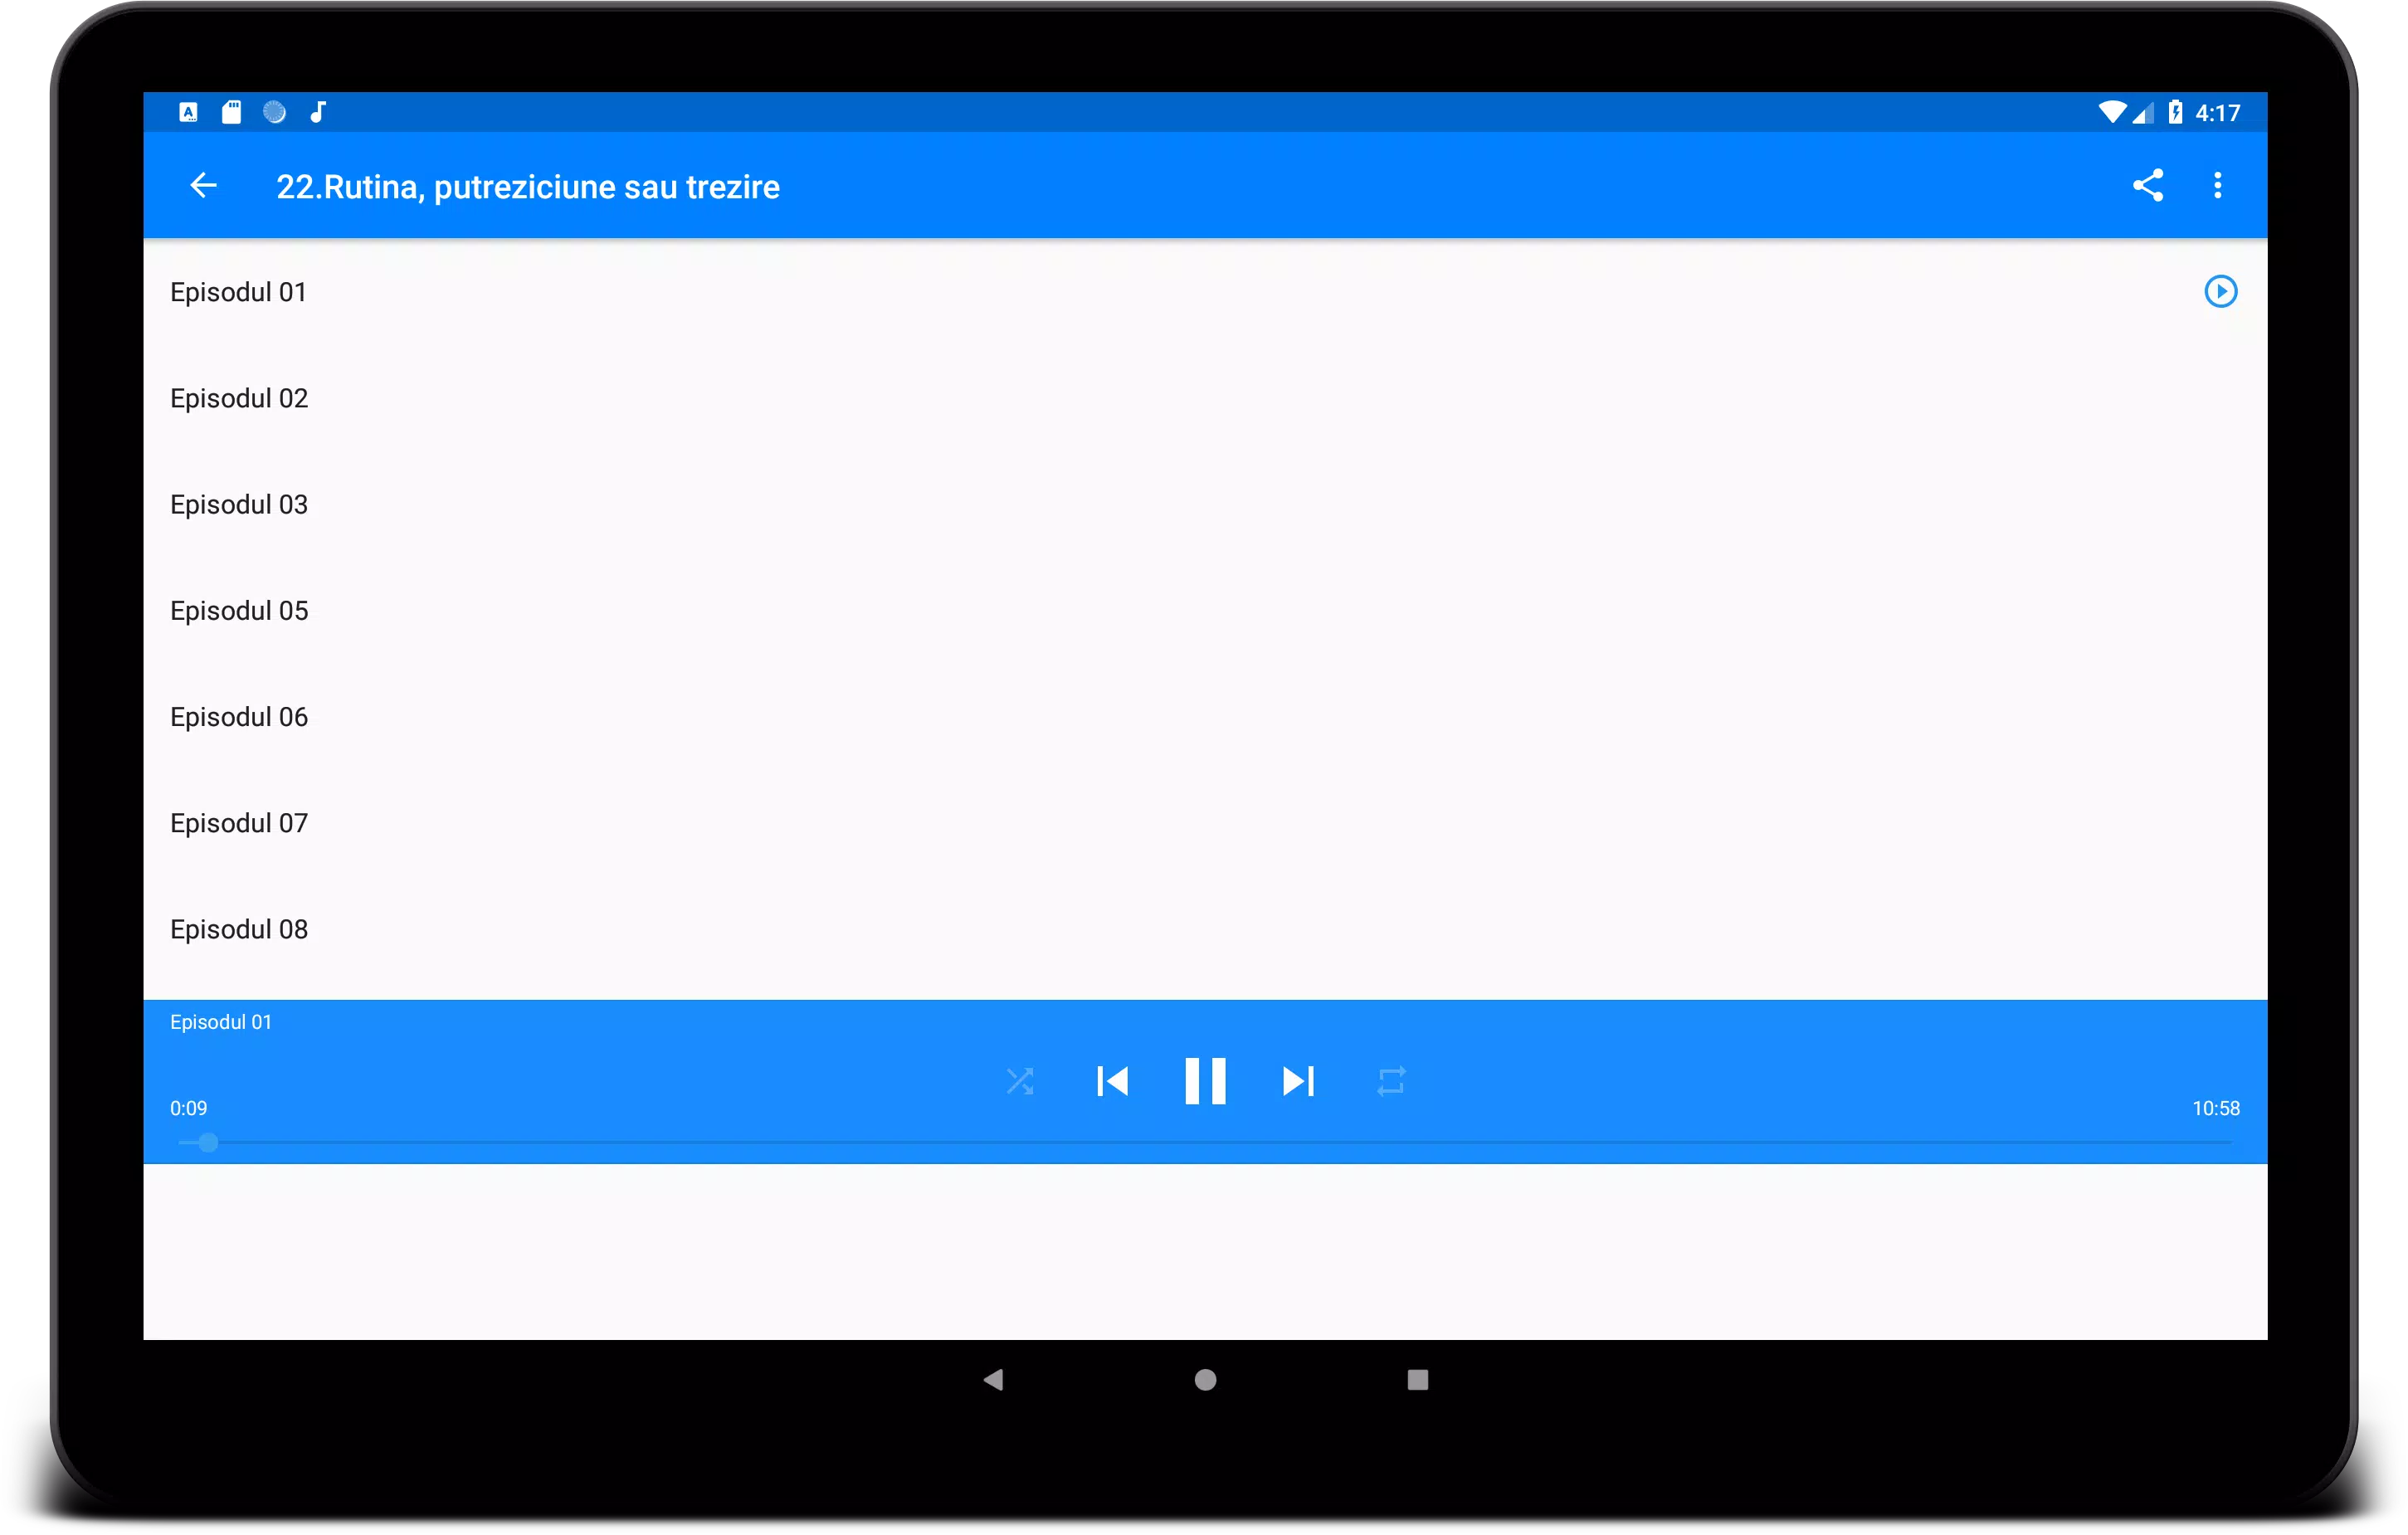 Carti Crestine Audio APK für Android herunterladen